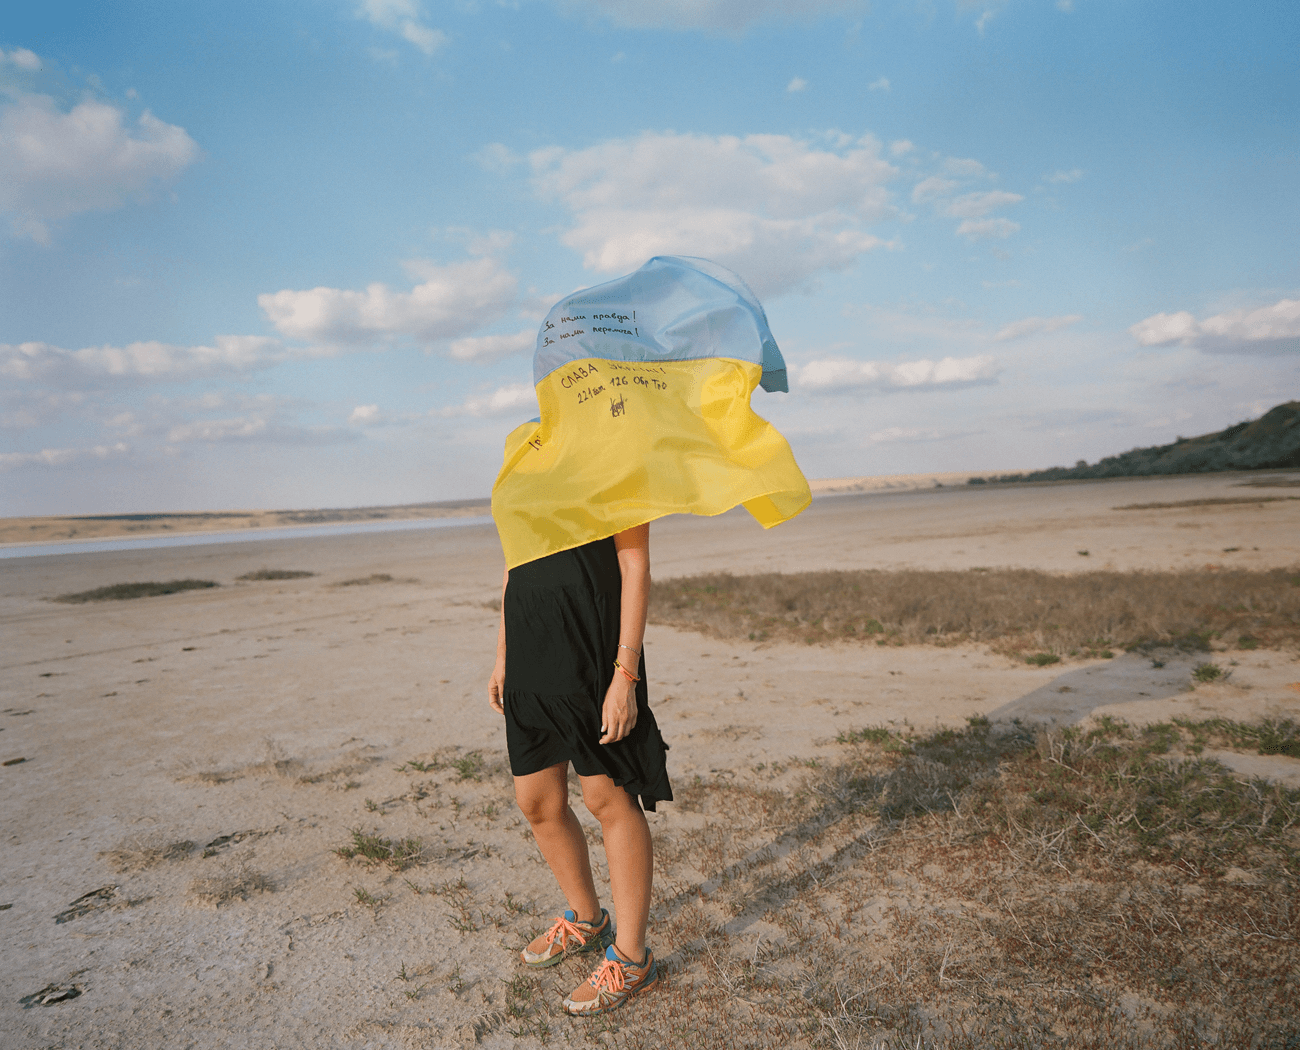 Ukraynalı fotoğrafçı Ira Lupu, anavatanının sonsuza dek nasıl değiştiğini fotoğrafladı